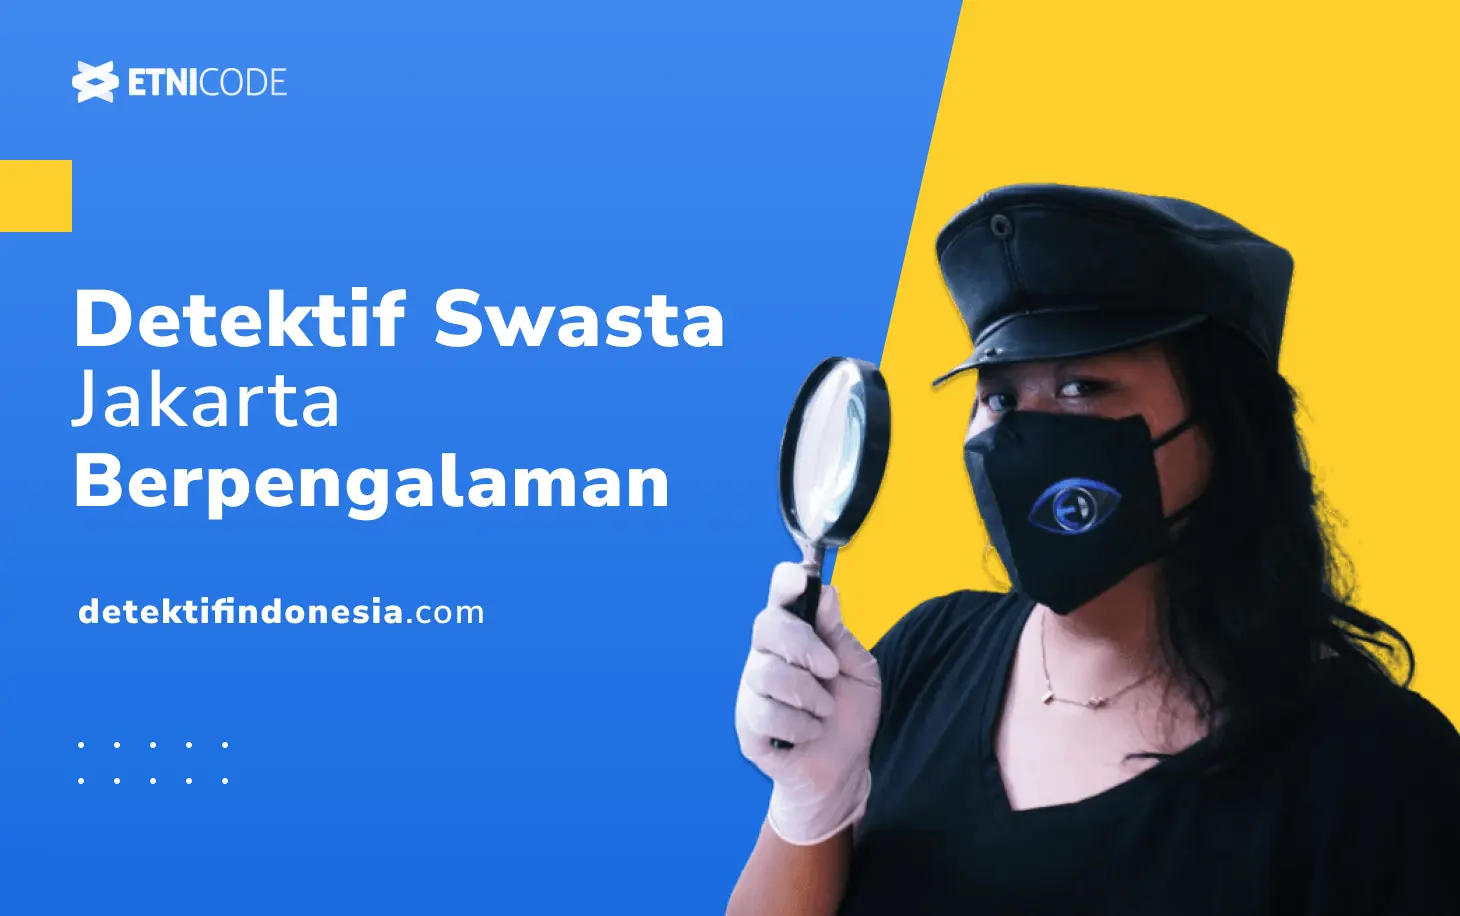 Detektif Swasta Jakarta Indonesia Berpengalaman Hasil Terbaik